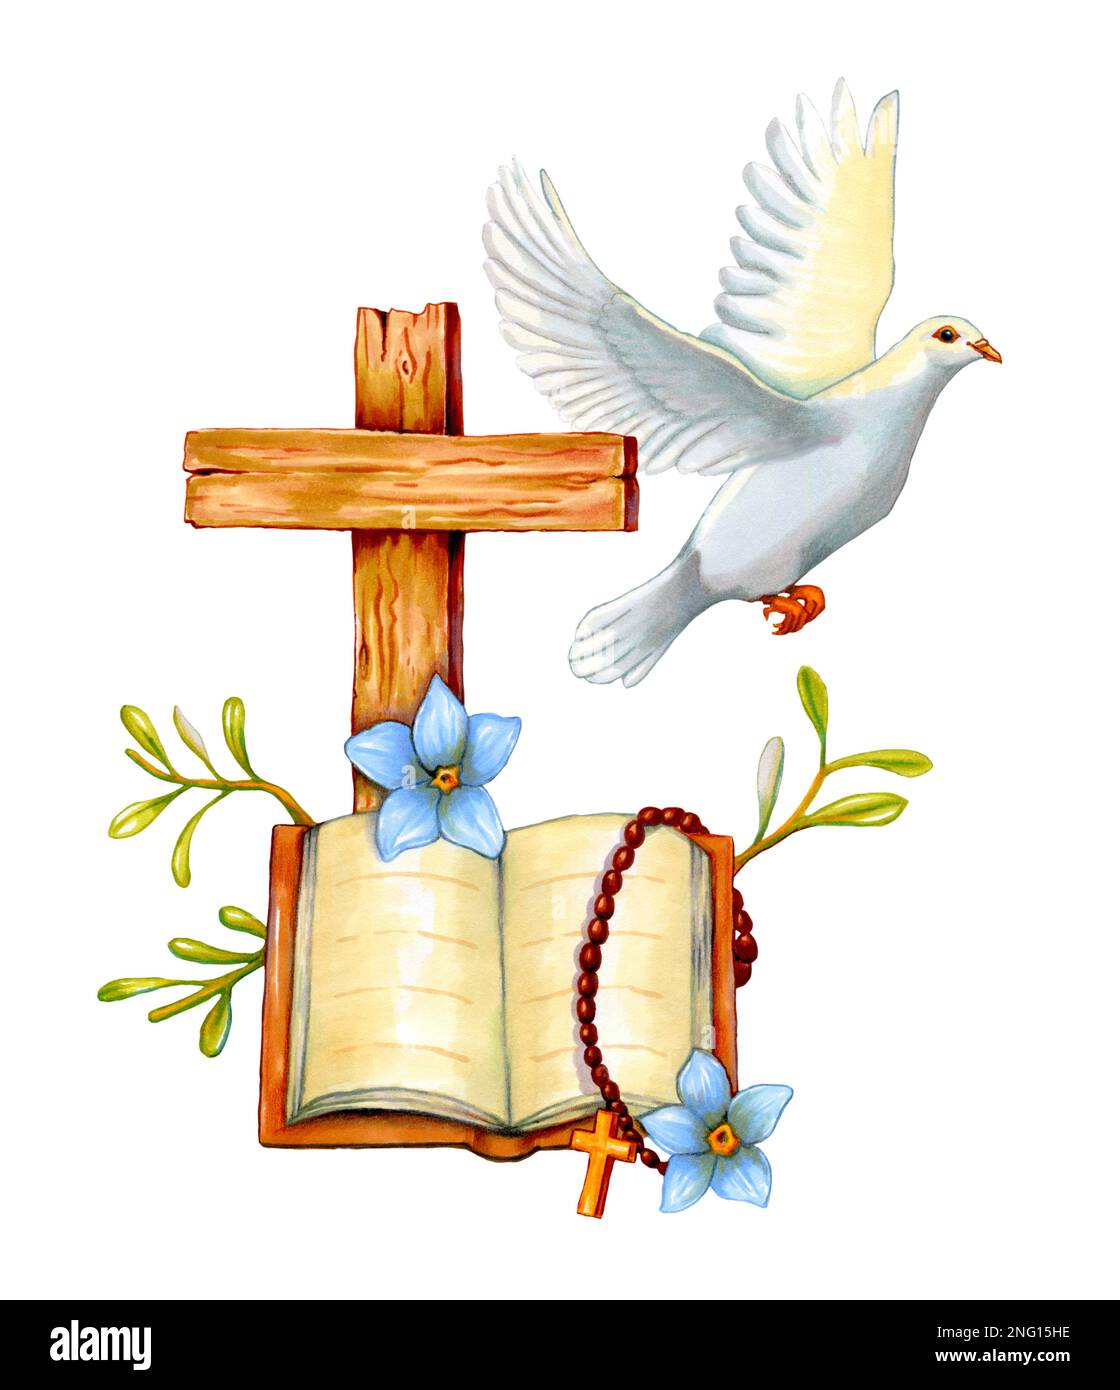 Croix chrétienne avec un livre Saint et une colombe blanche. Illustration traditionnelle sur papier. Banque D'Images